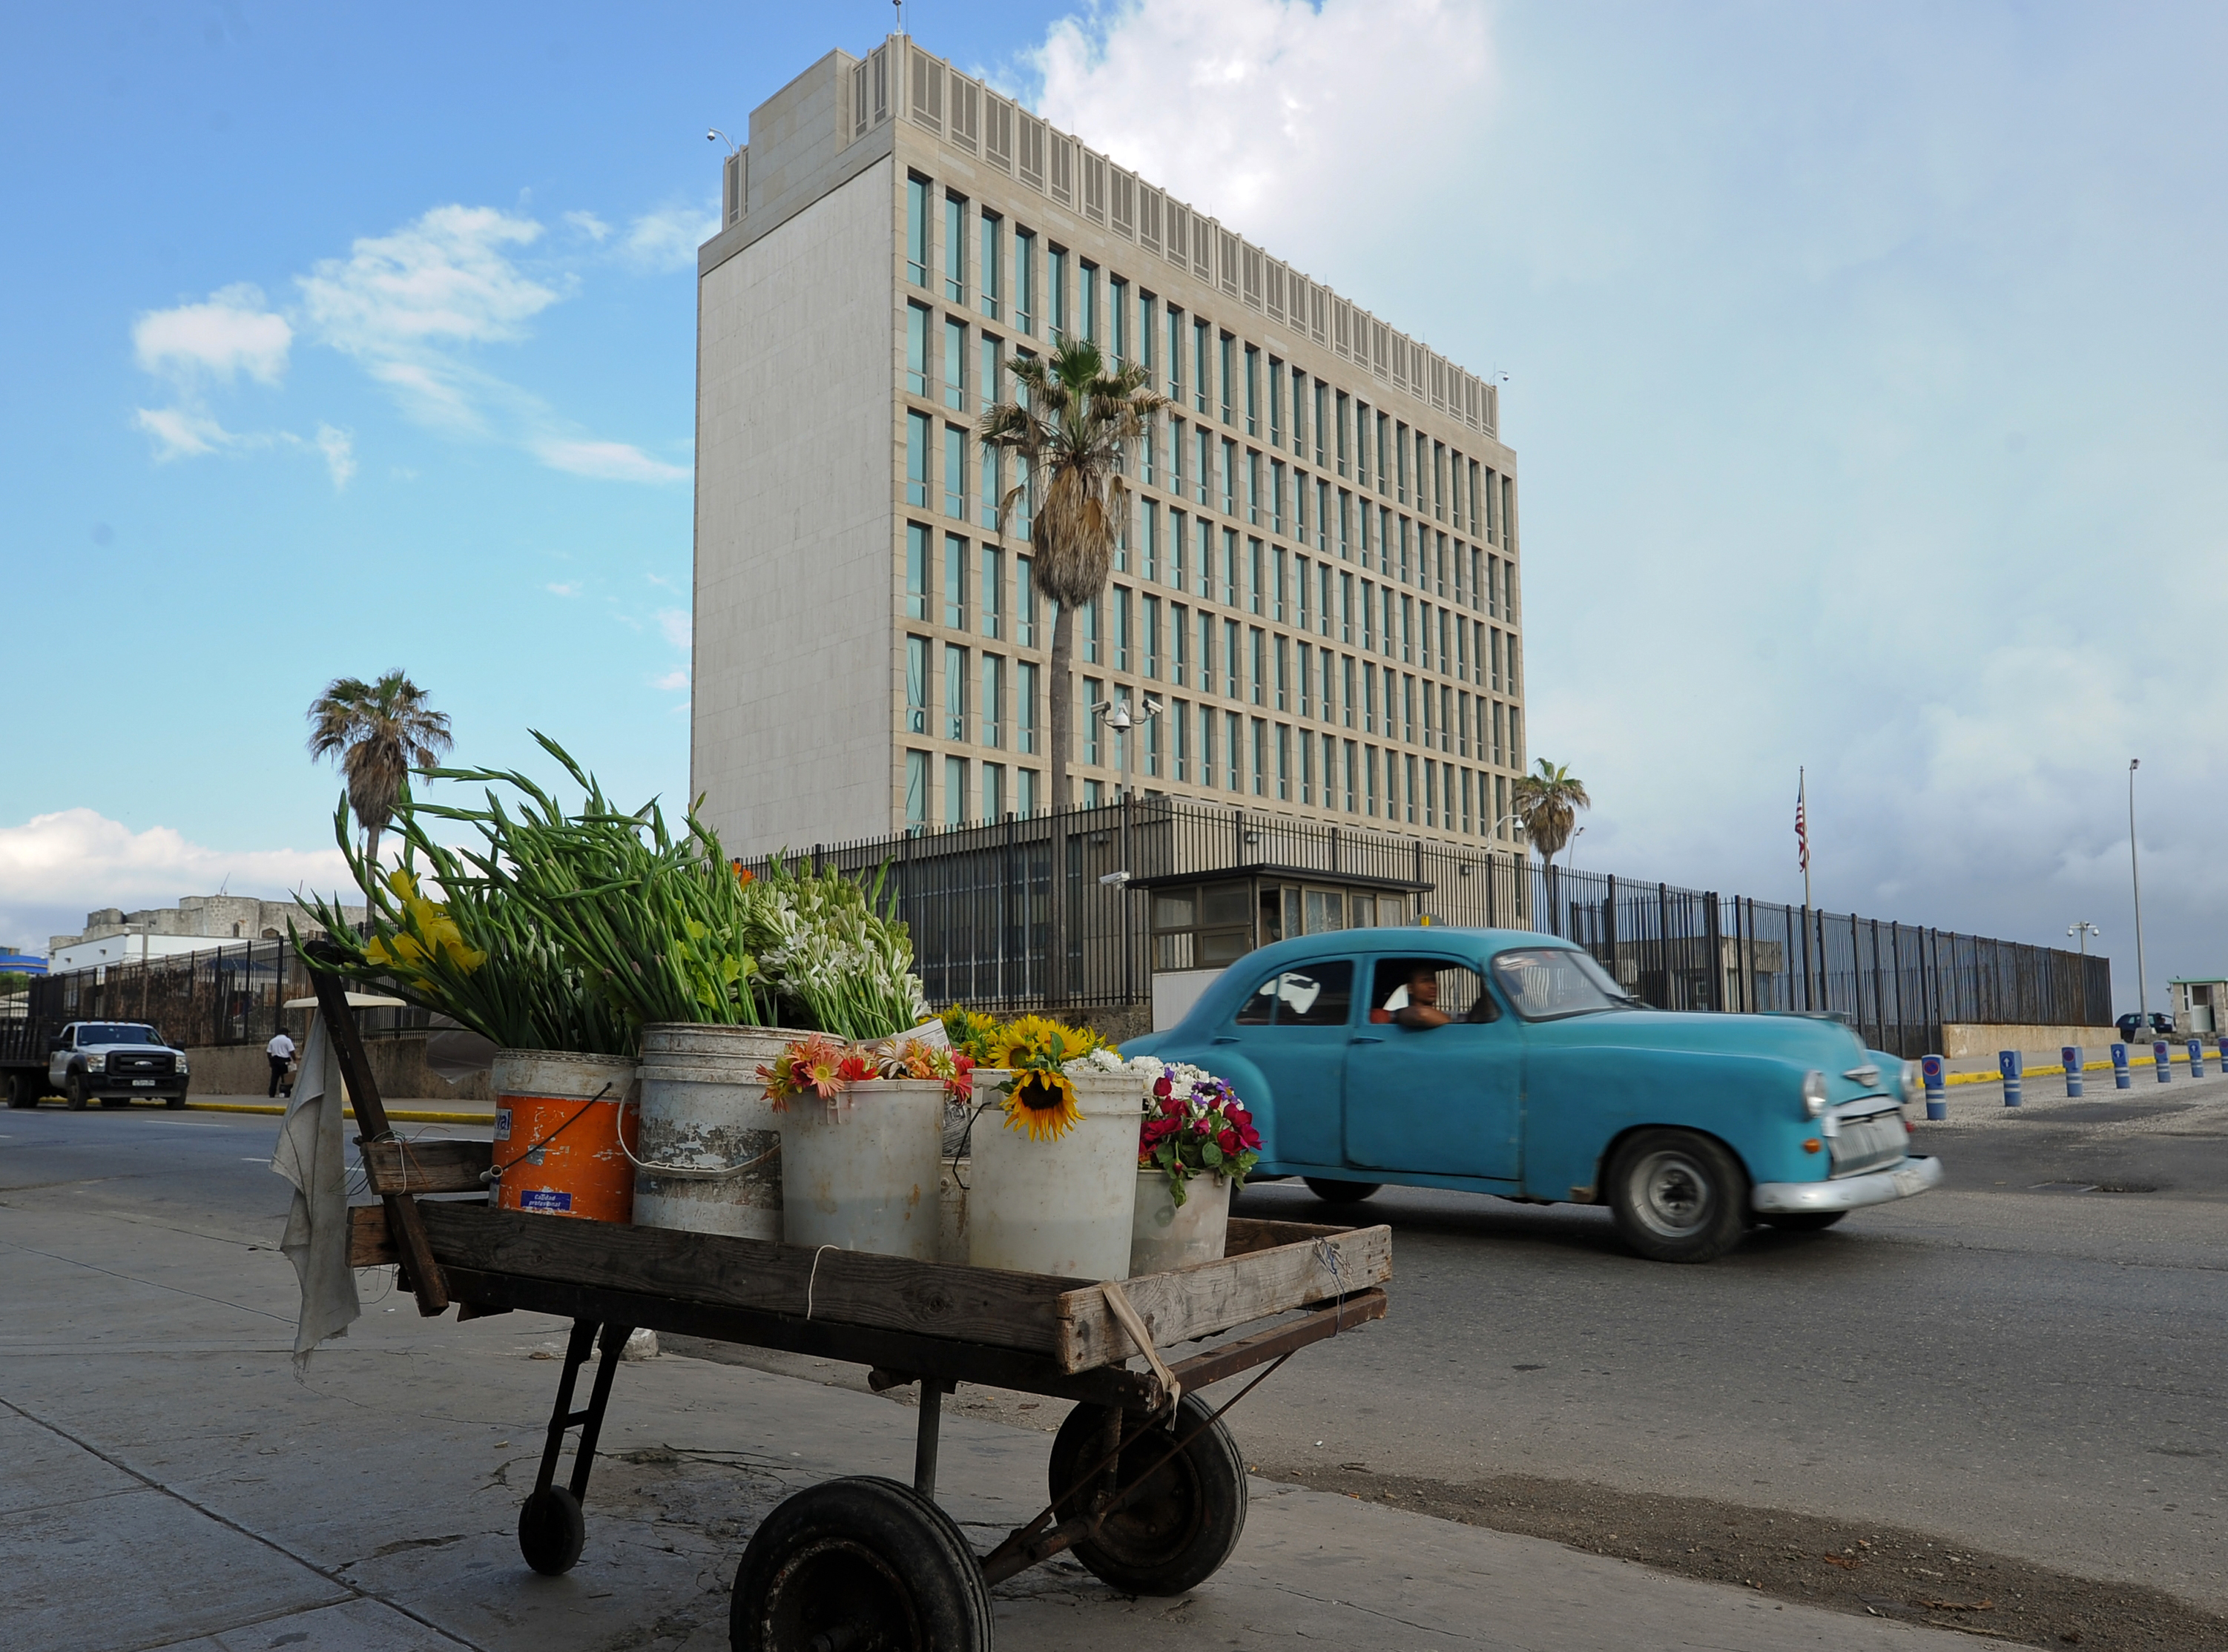 Nincs bizonyíték rá, hogy akusztikus támadás áldozatai lettek a Havannában szolgáló amerikai diplomaták